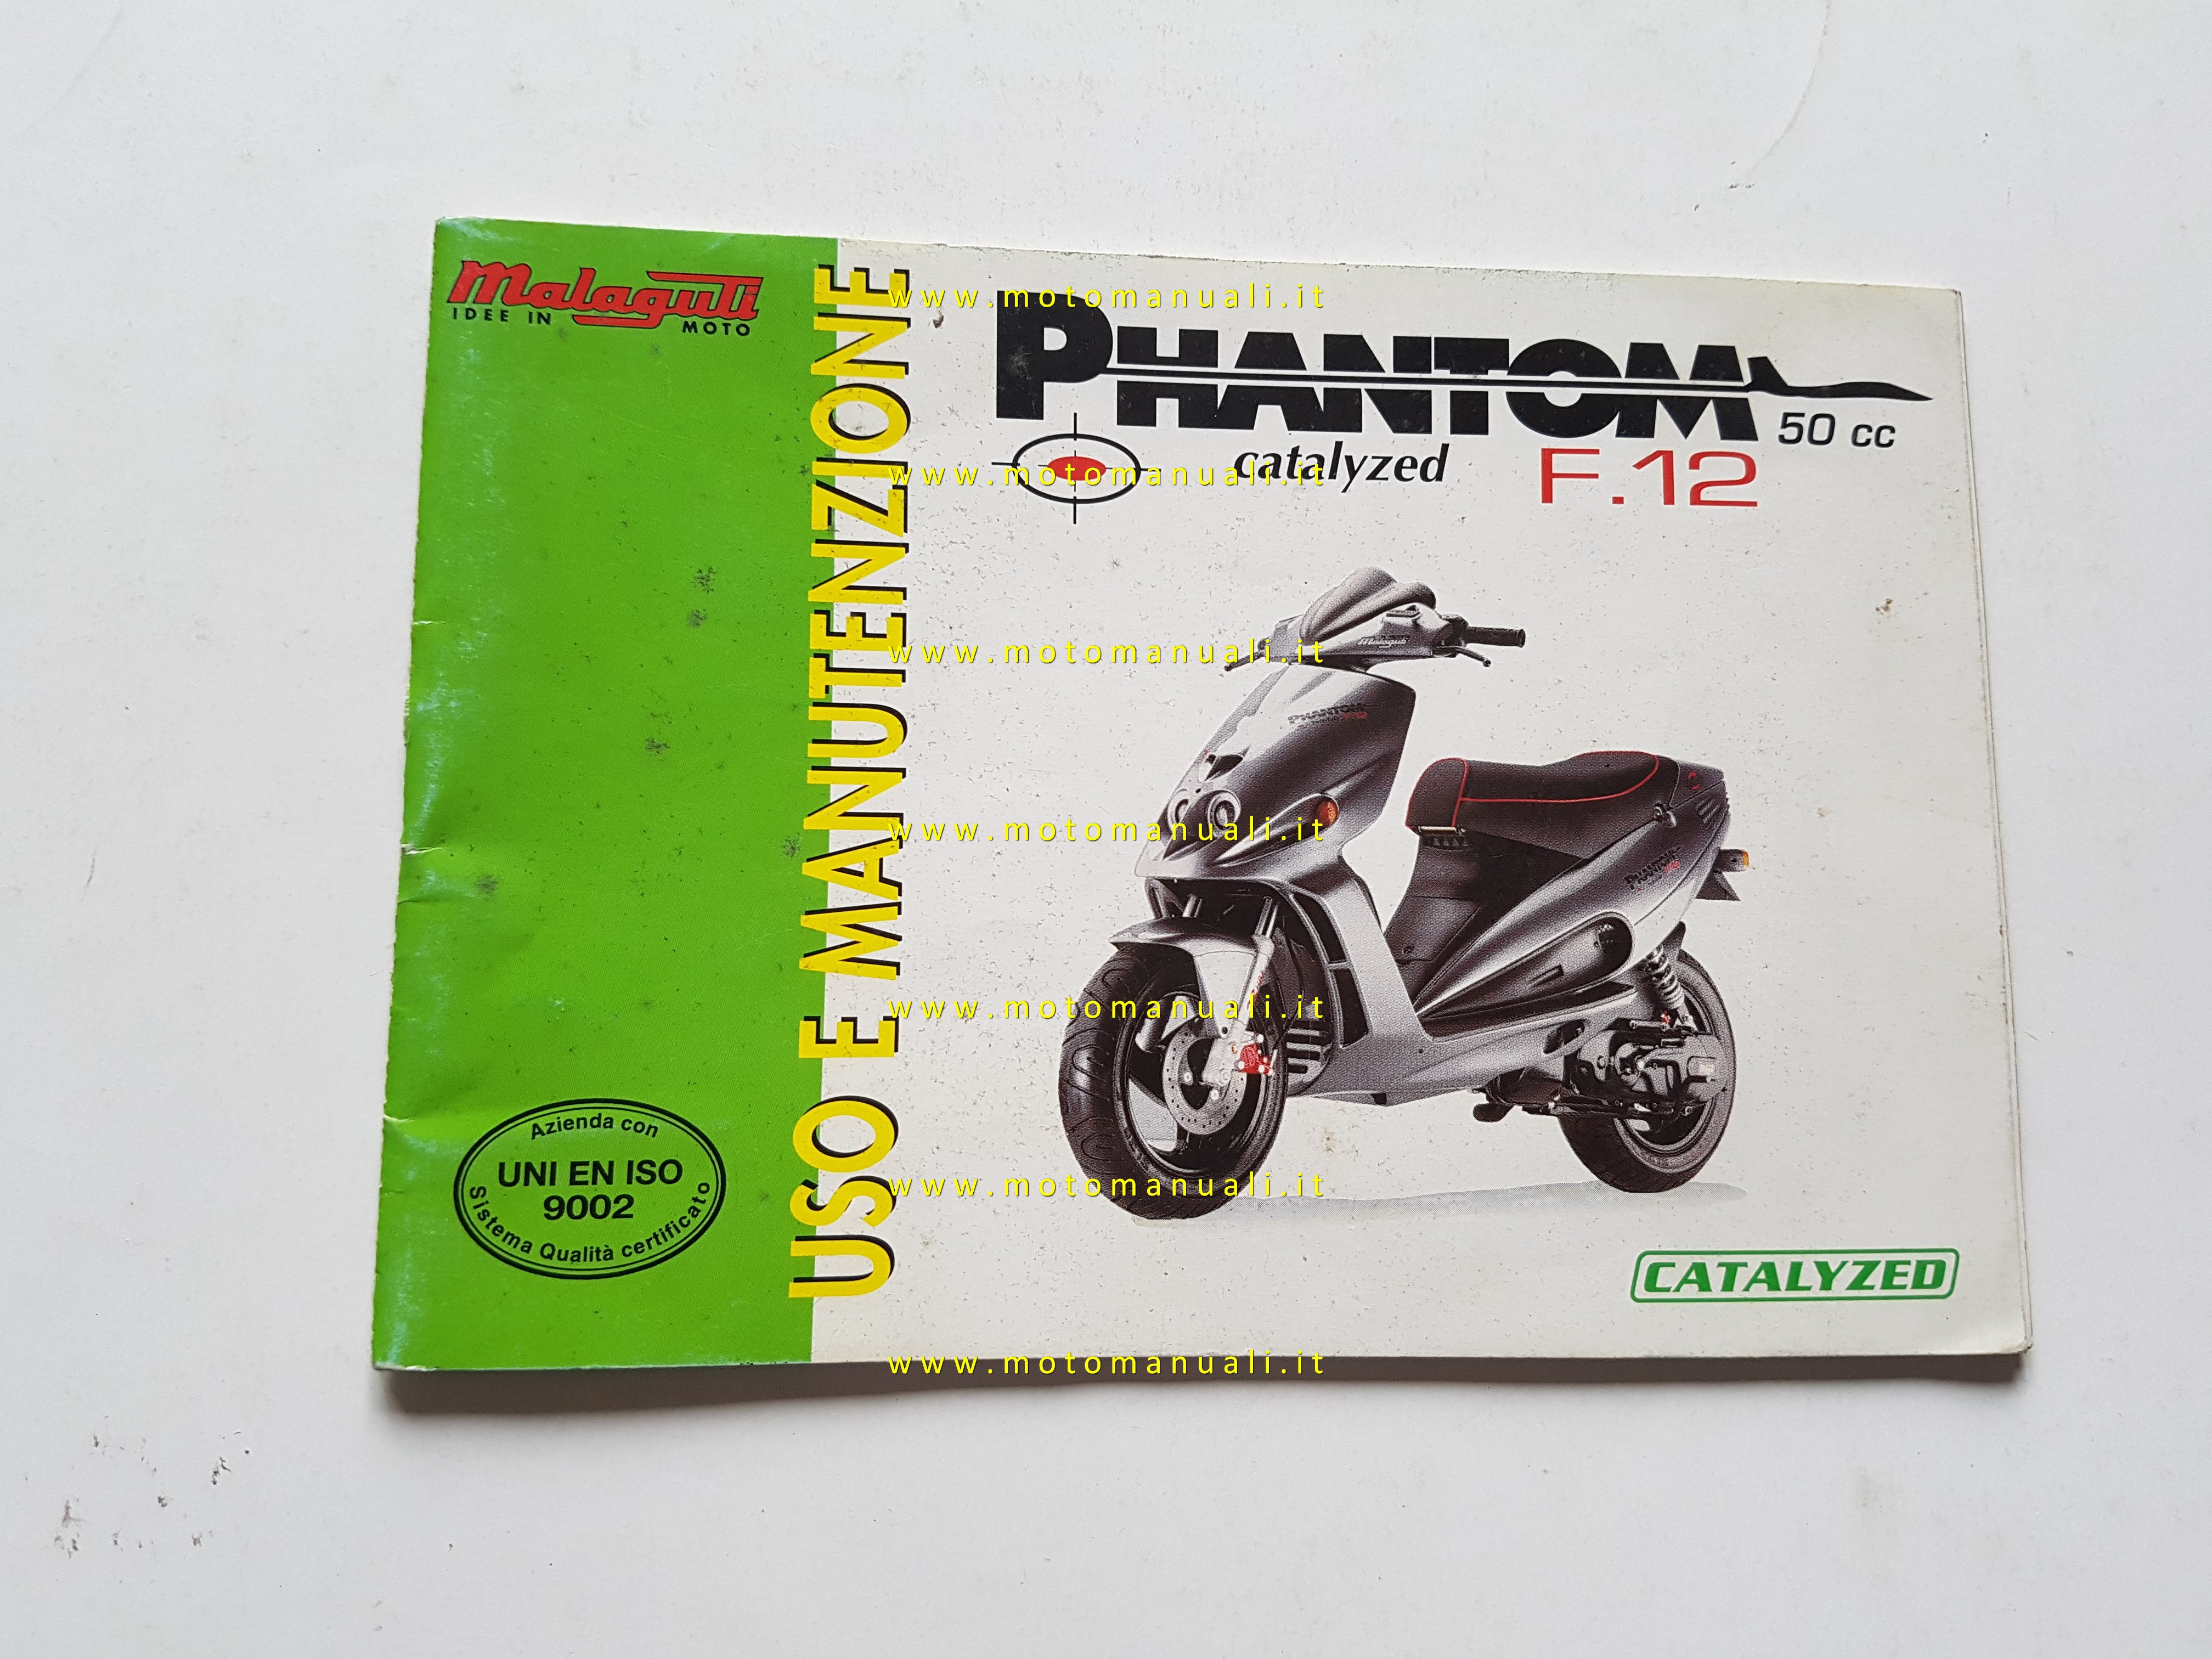 Owners manuals: Malaguti Phantom F12 Catalyzed 50 manuale uso manutenzione  originale italiano